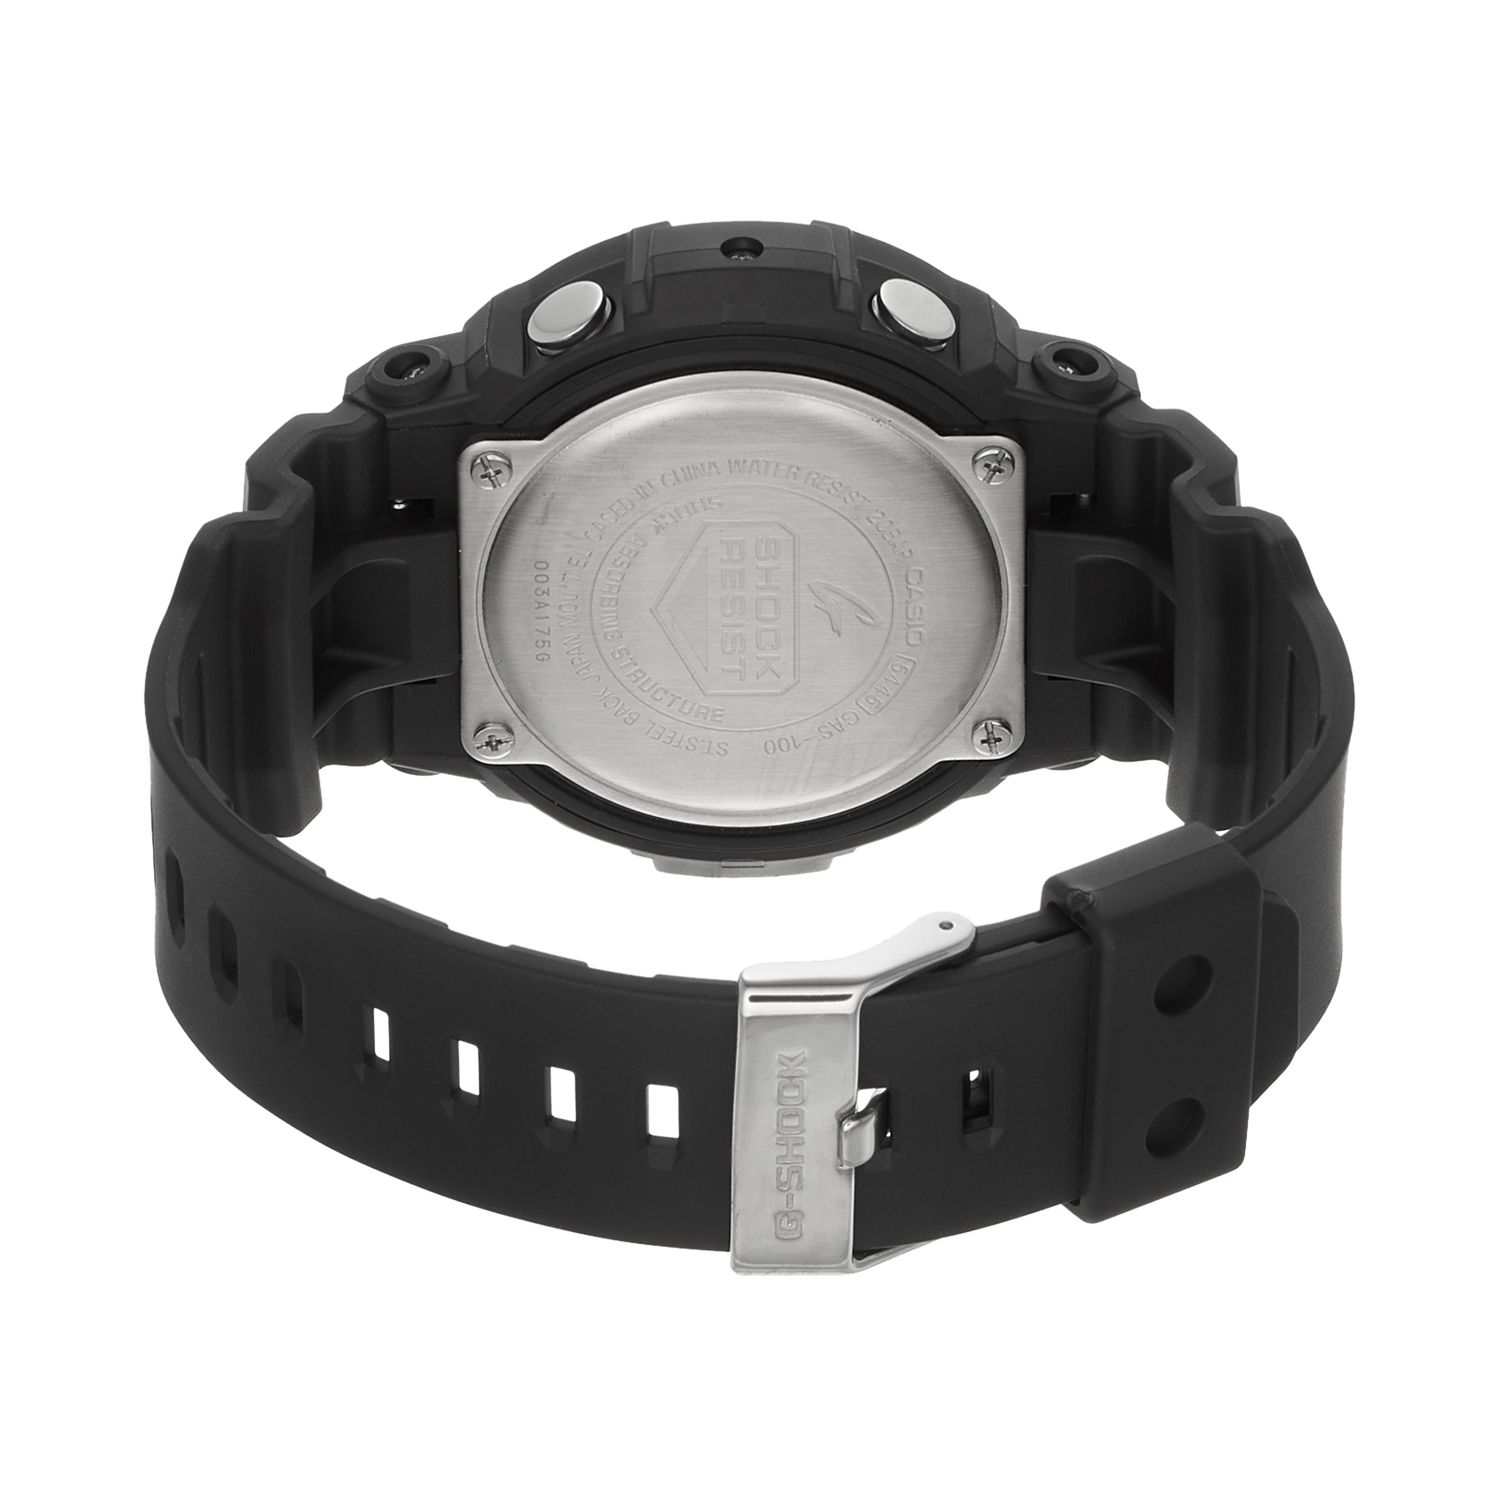 Мужские аналогово-цифровые часы G-Shock Tough Solar с солнечной батареей — GAS100-1A Casio цена и фото